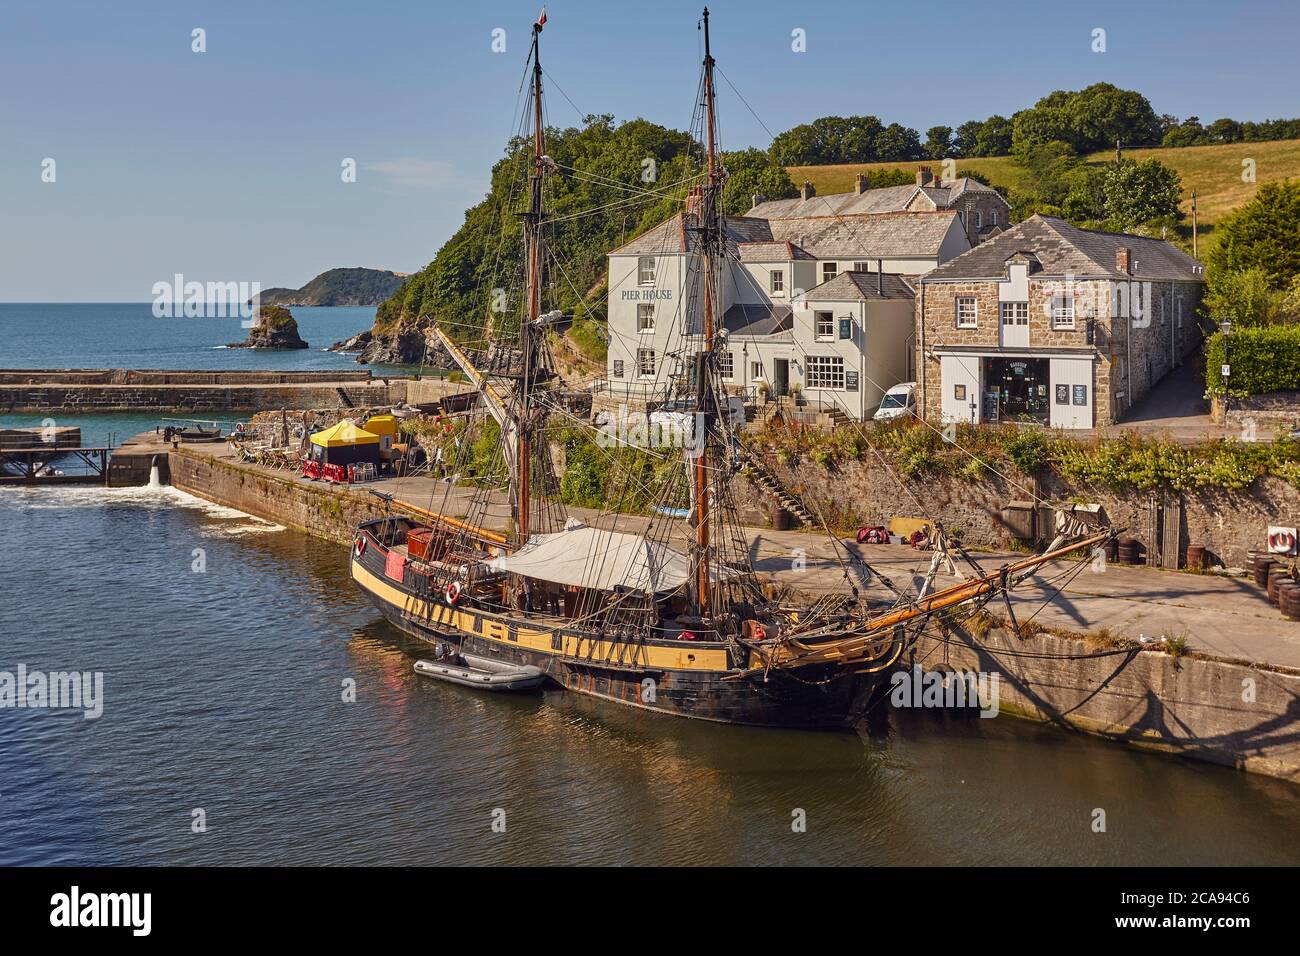 Der Hafen in Charlestown, in der Nähe von St. Austell, an Cornwalls Südküste, verwendet, Filmsets, vor allem TV-Drama Poldark, Charlestown, England Stockfoto